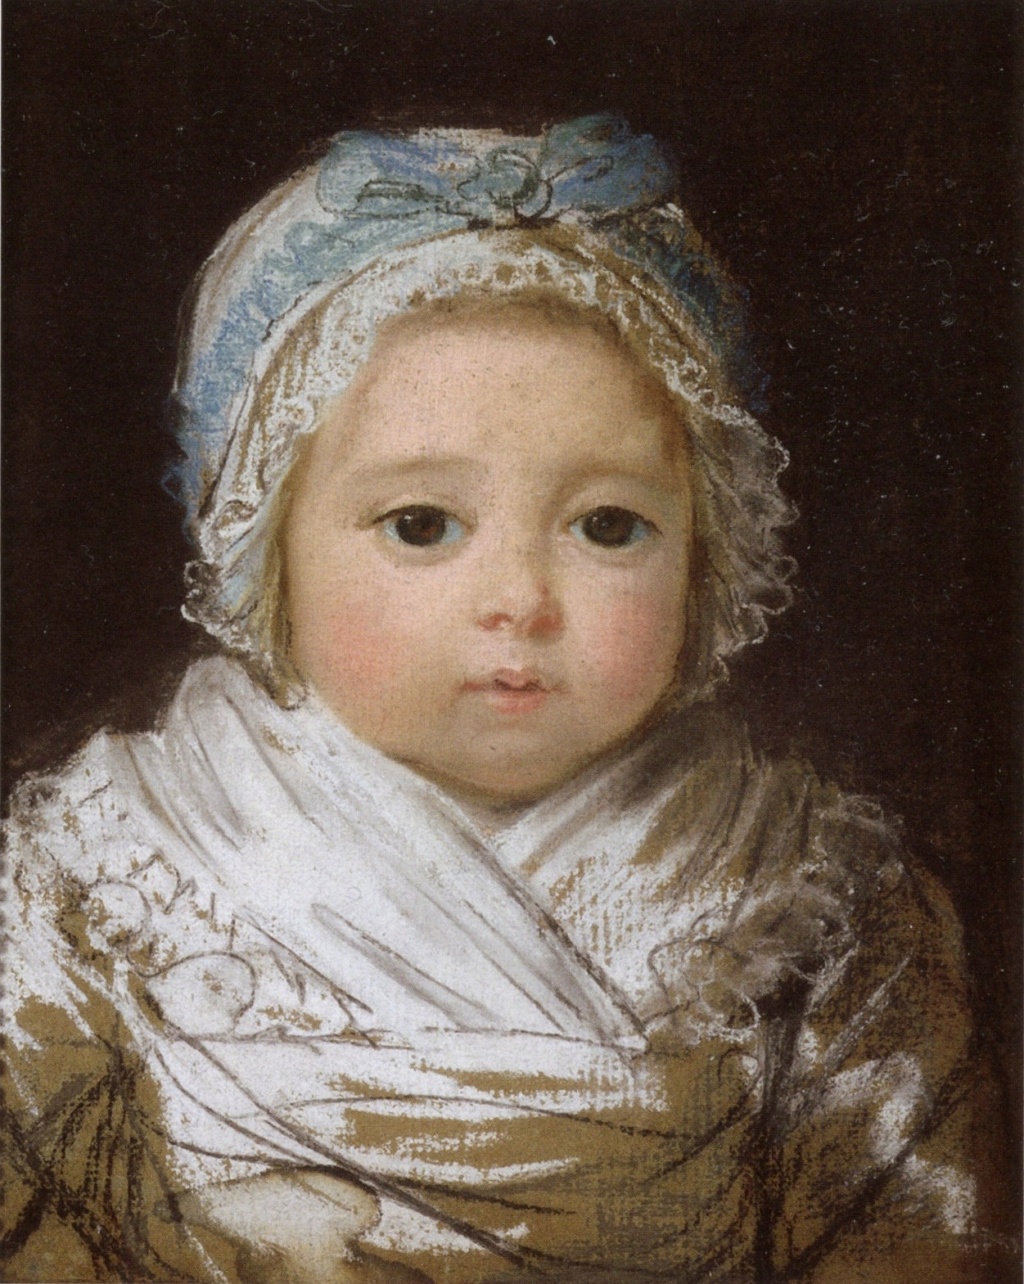 vigée - Portraits de Louis-Charles et de Mme Sophie, alors nourrissons, par Vigée Le Brun...ou pas ?! - Page 2 A_baby10